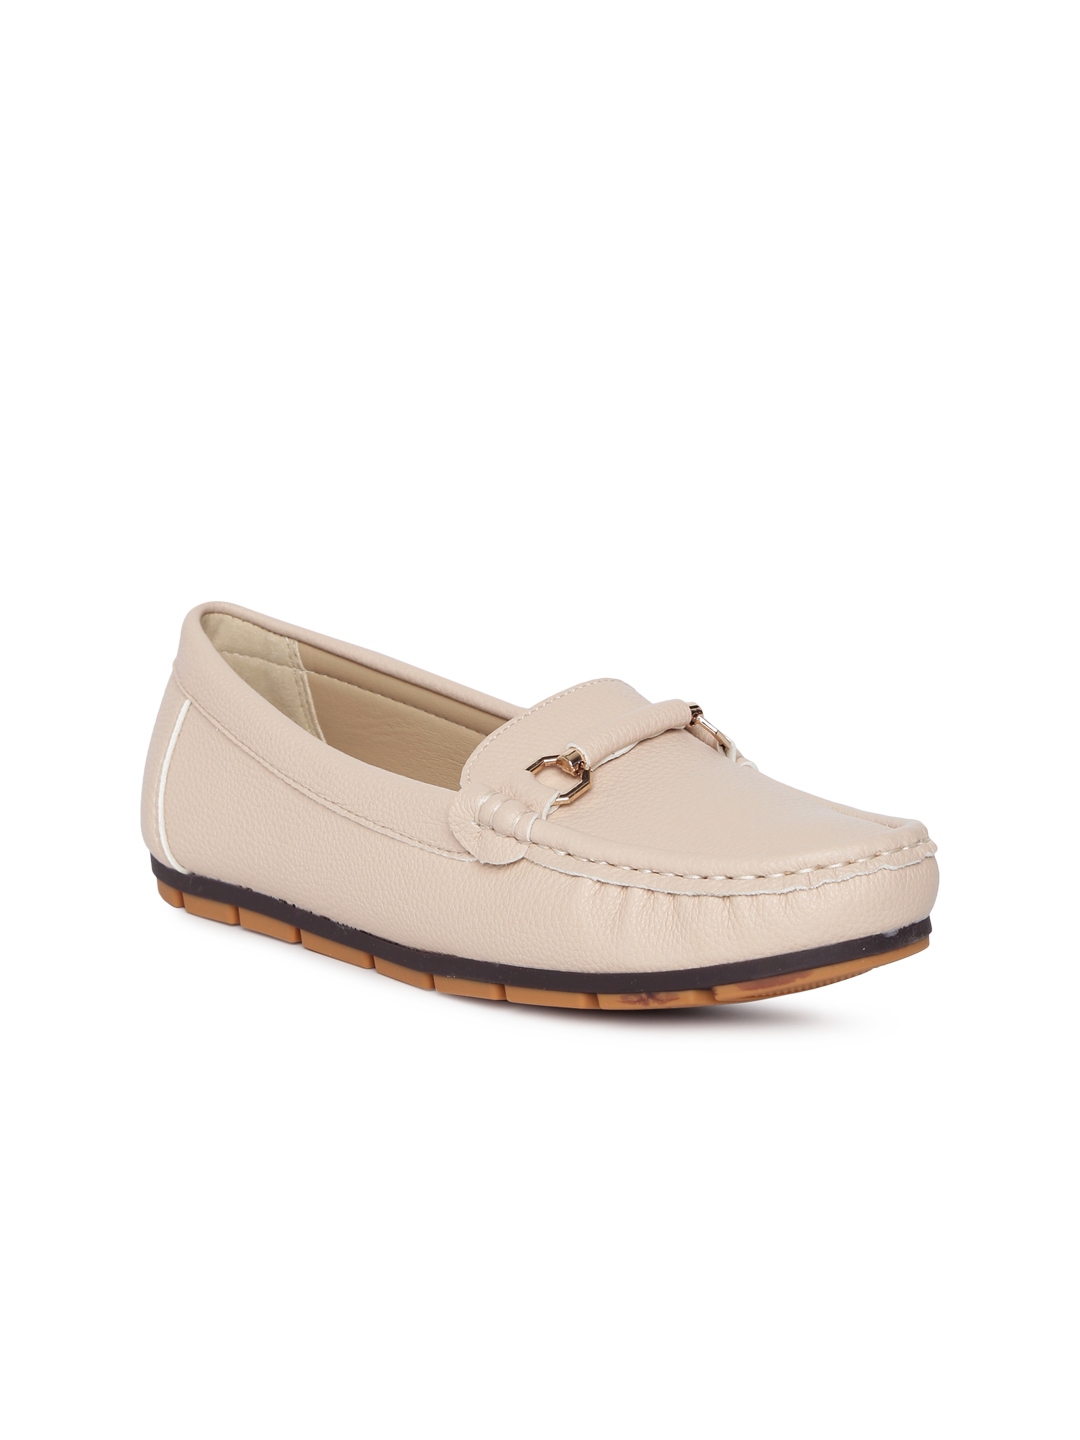 Buy CERIZ Women Beige Loafers - Casual Shoes for Women 8791641 | Myntra